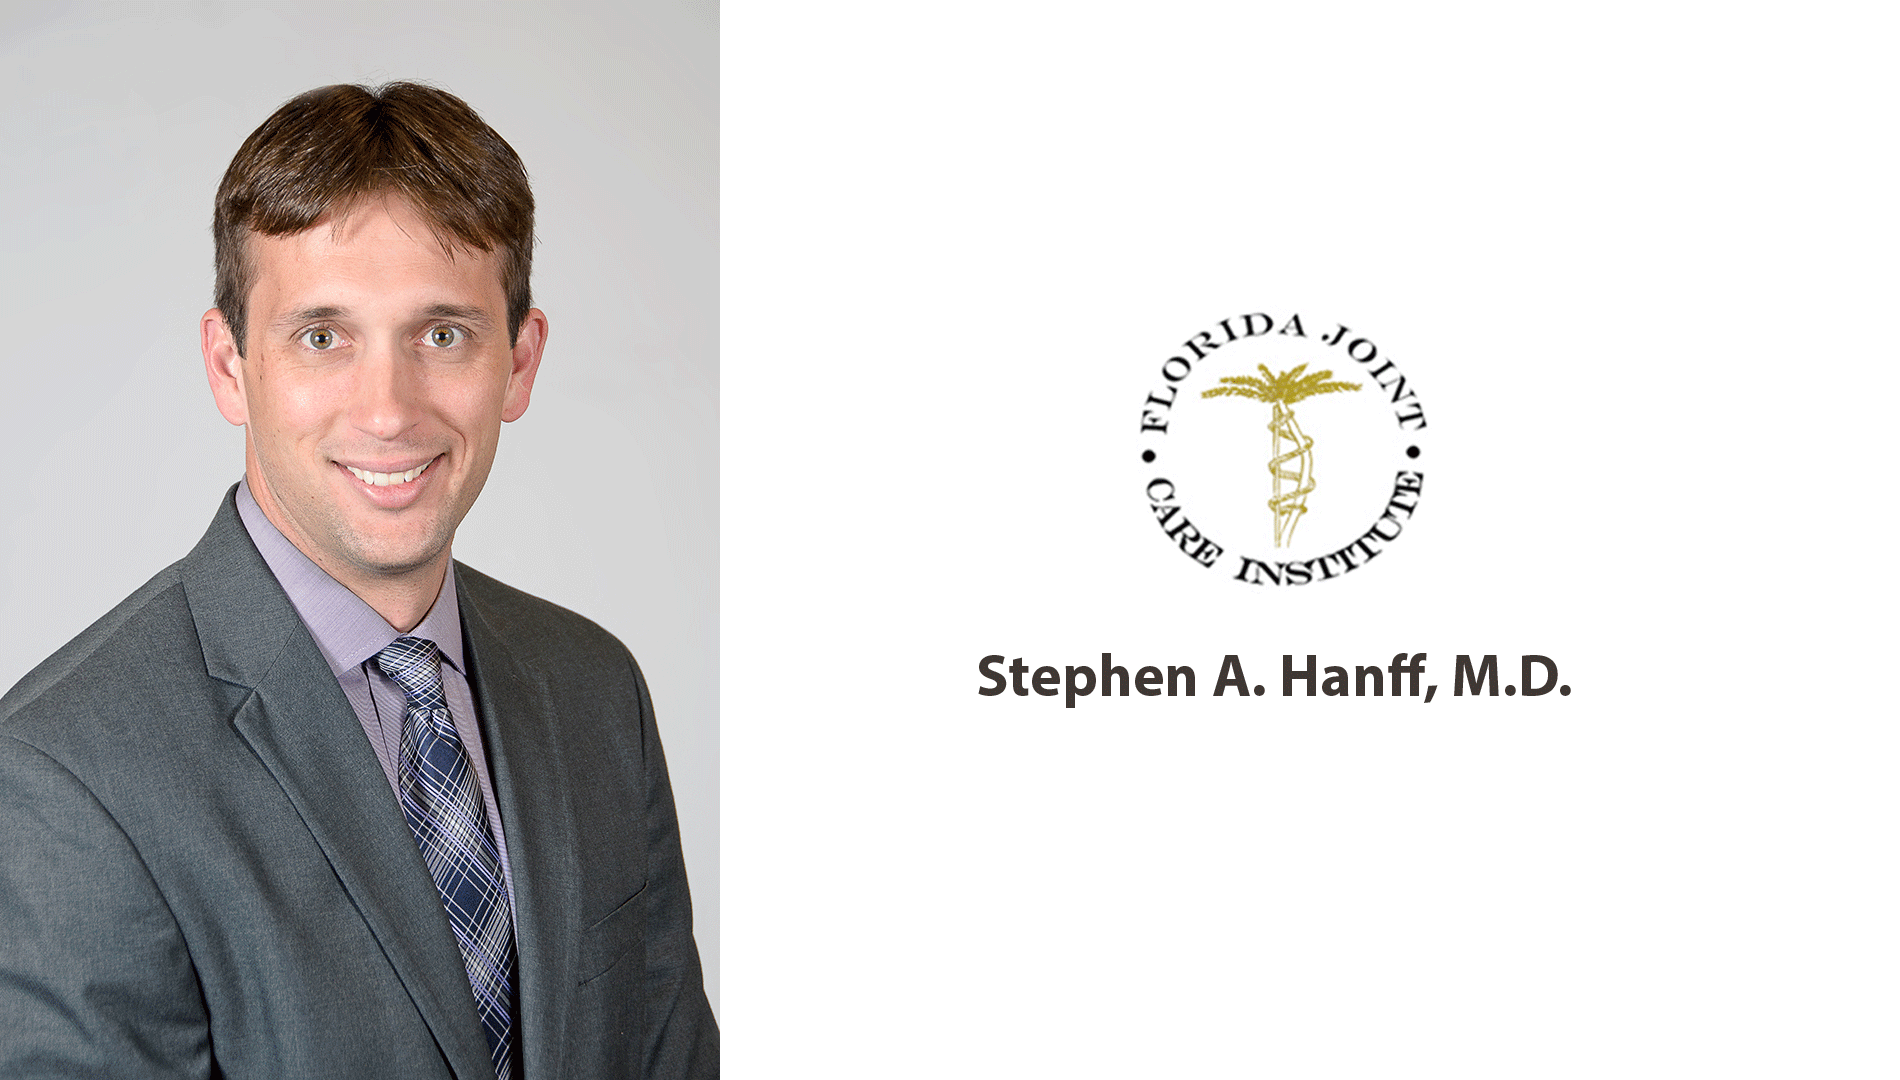 Stephen A. Hanff, M.D.